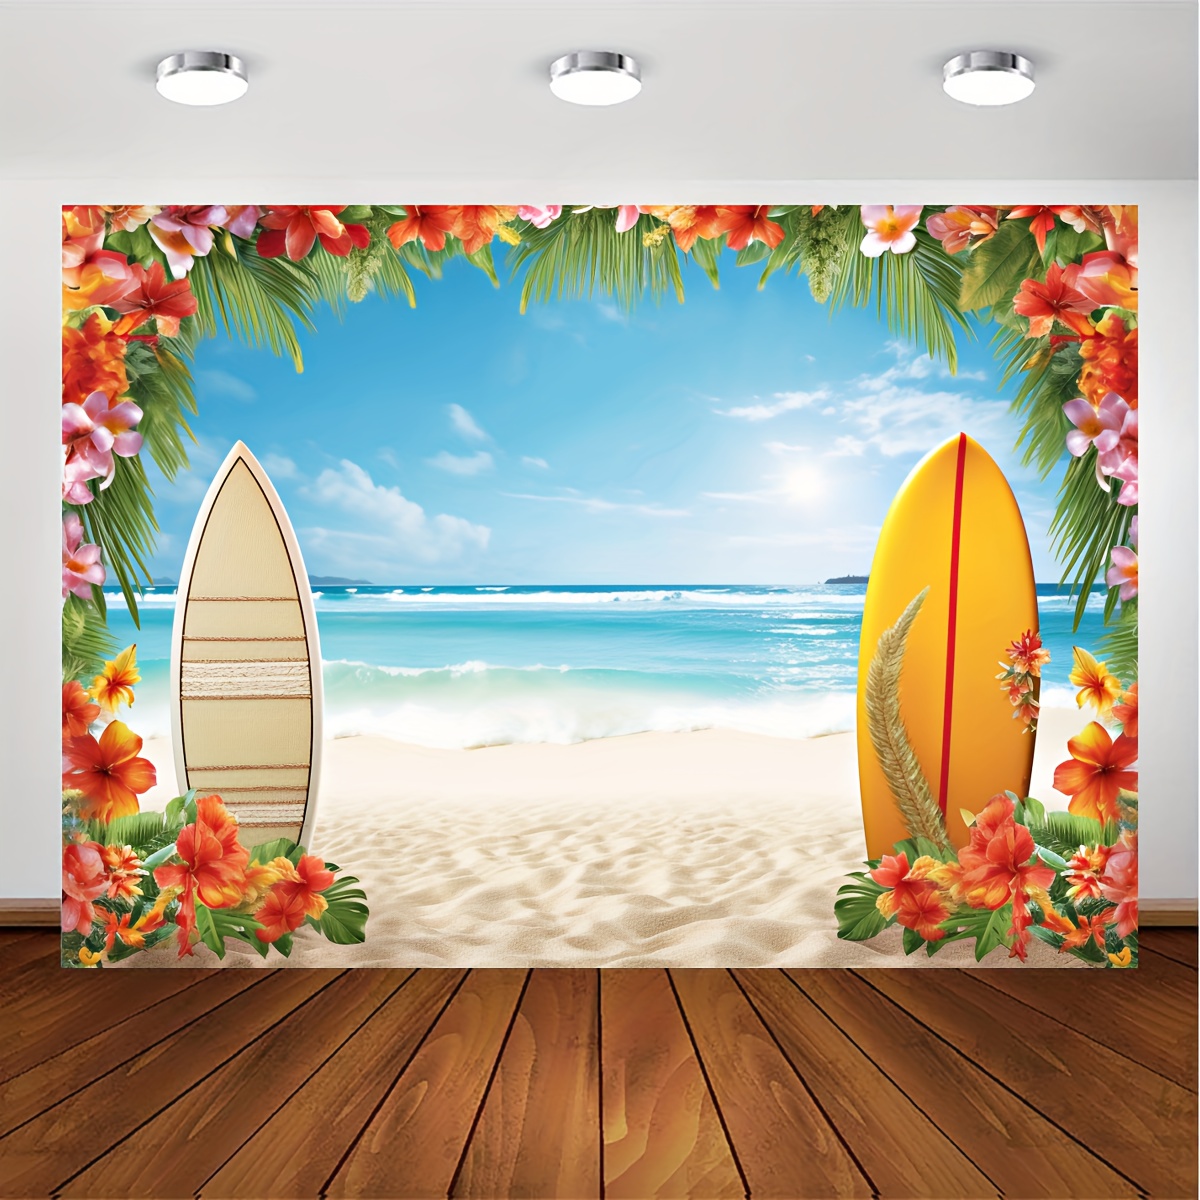 Decoraciones de fiesta Luau, decoraciones de fiesta hawaiana, decoraciones  de fiesta tropical, decoración de fiesta de verano Aloha temática de playa